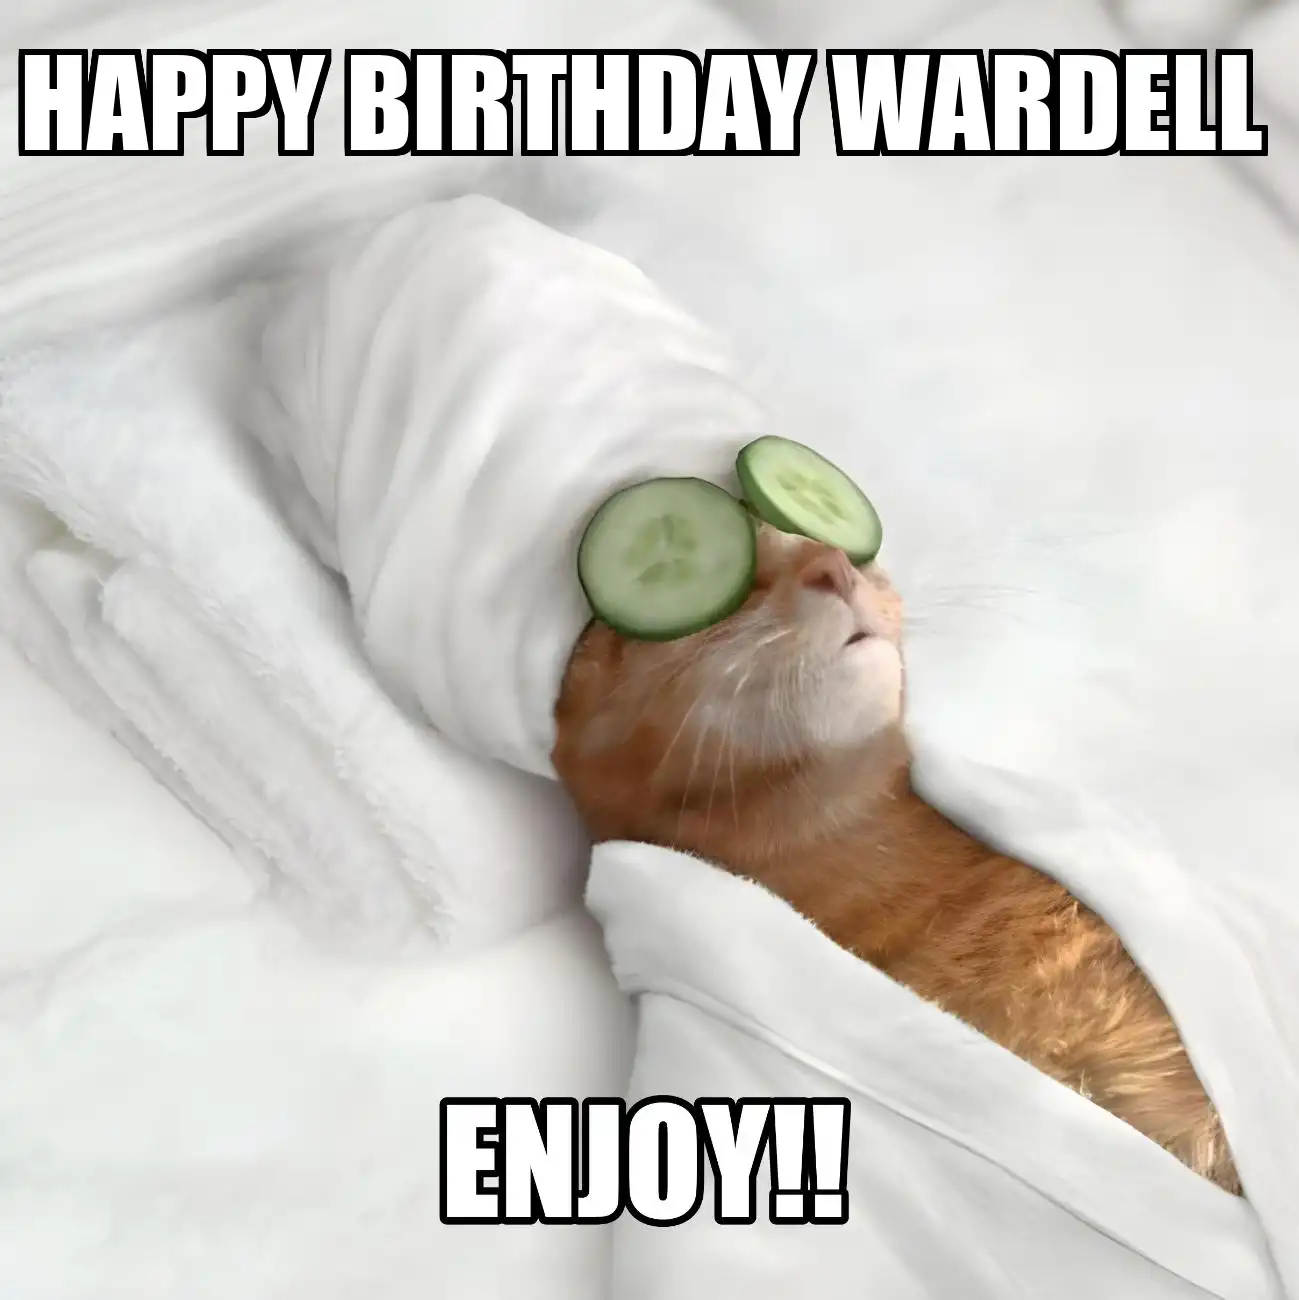 Happy Birthday Wardell Enjoy Cat Meme